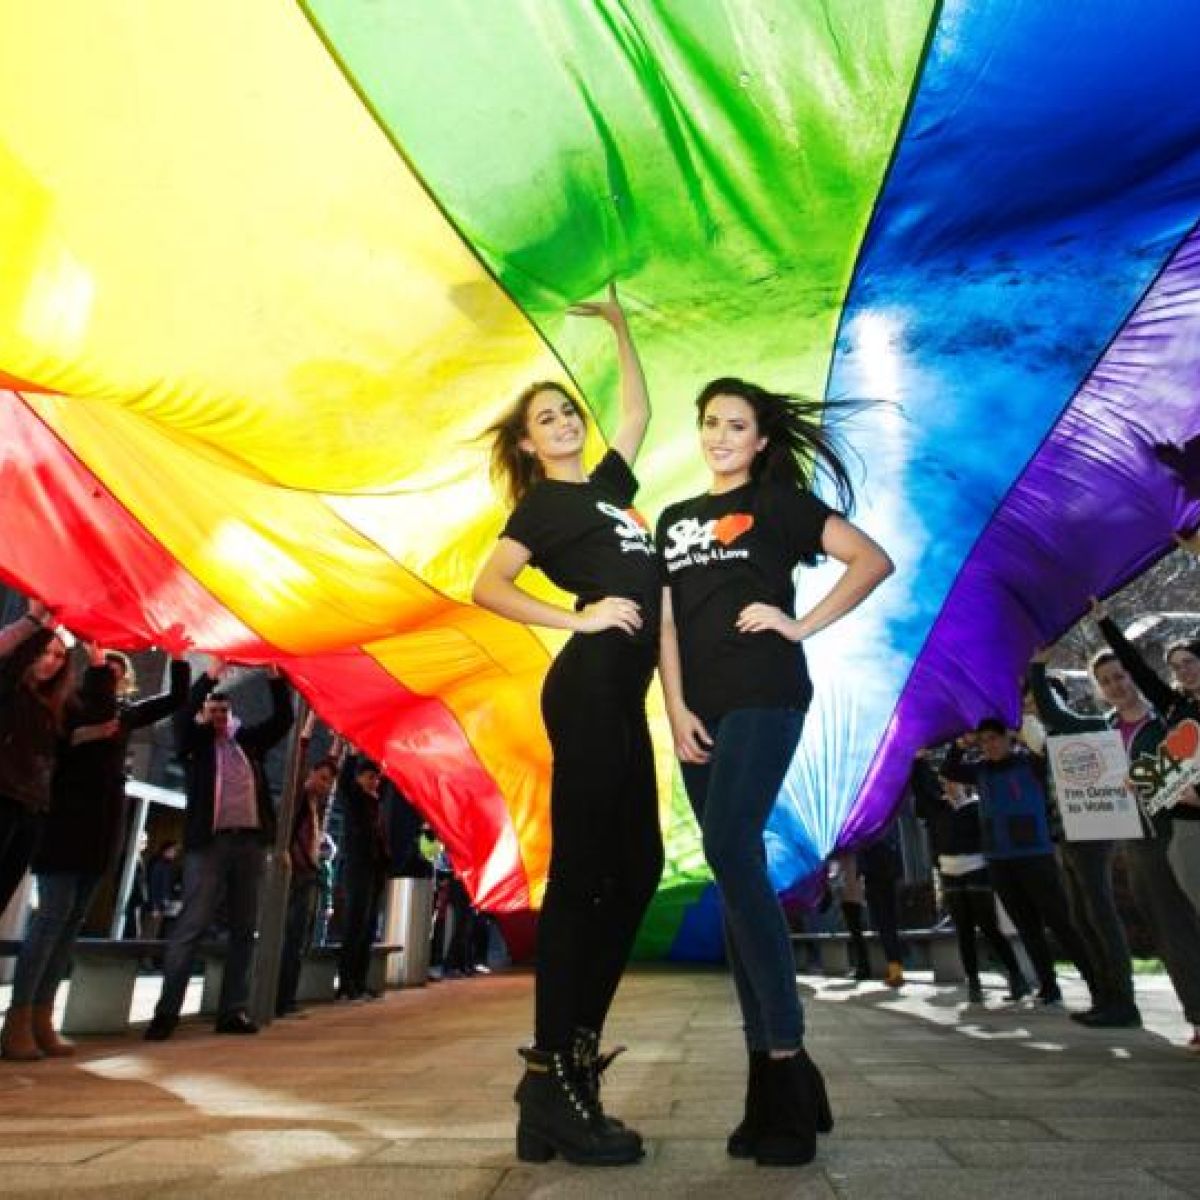 2020 Lesbian Dating App in Ireland - uselesspenguin.co.uk